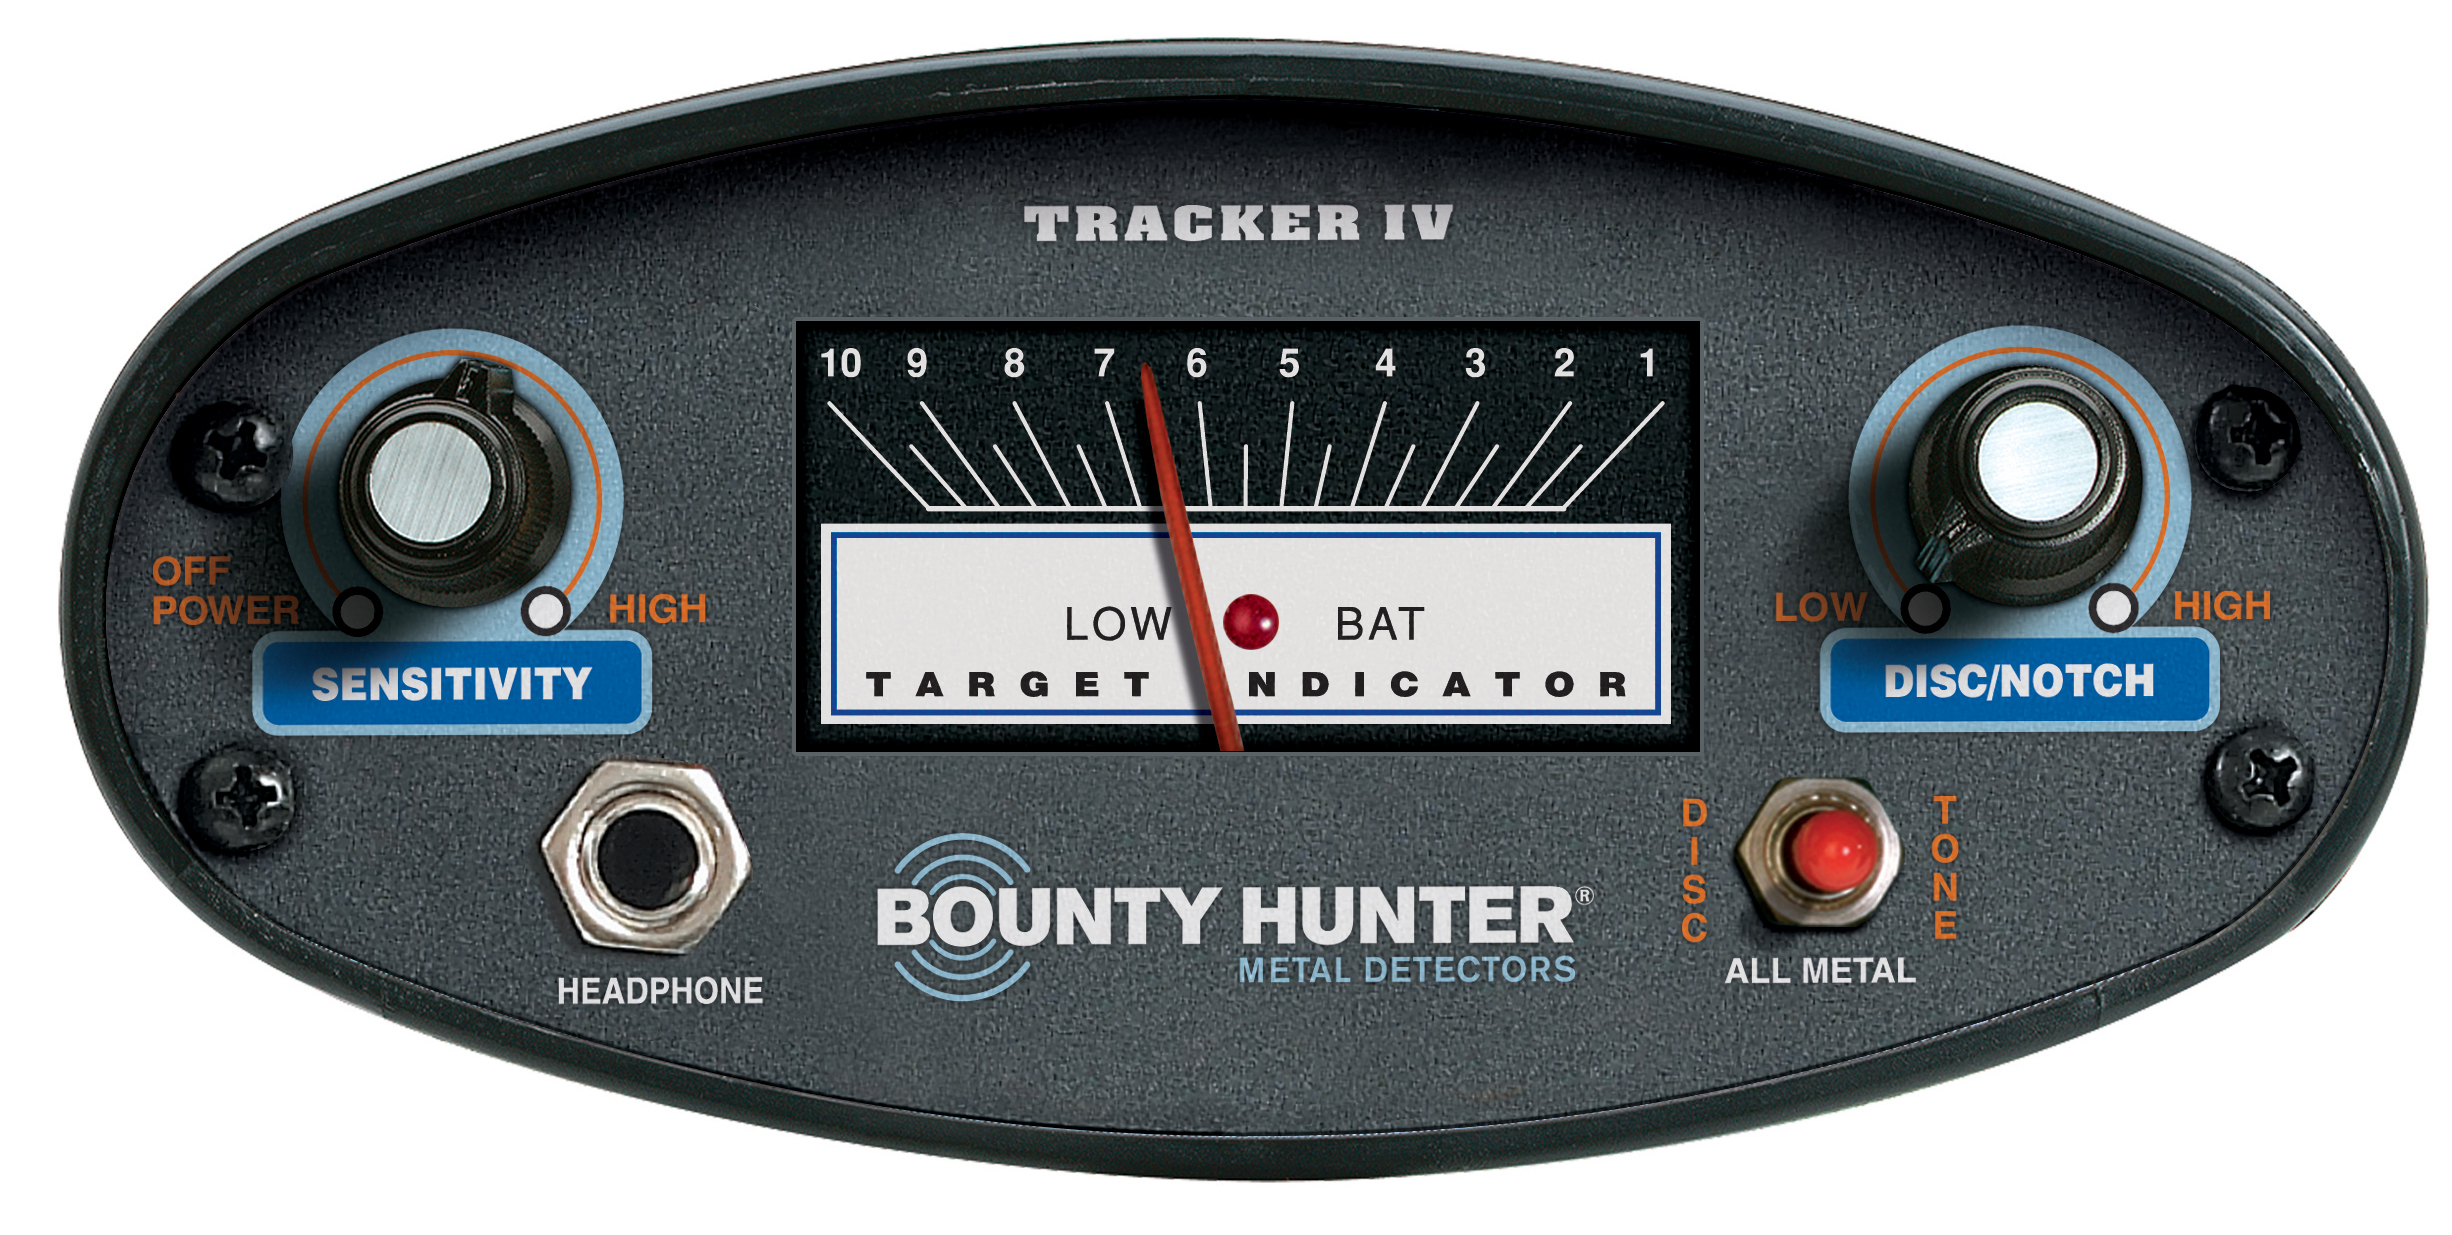 BOUNTY HUNTER Tracker IV Détecteur de métaux